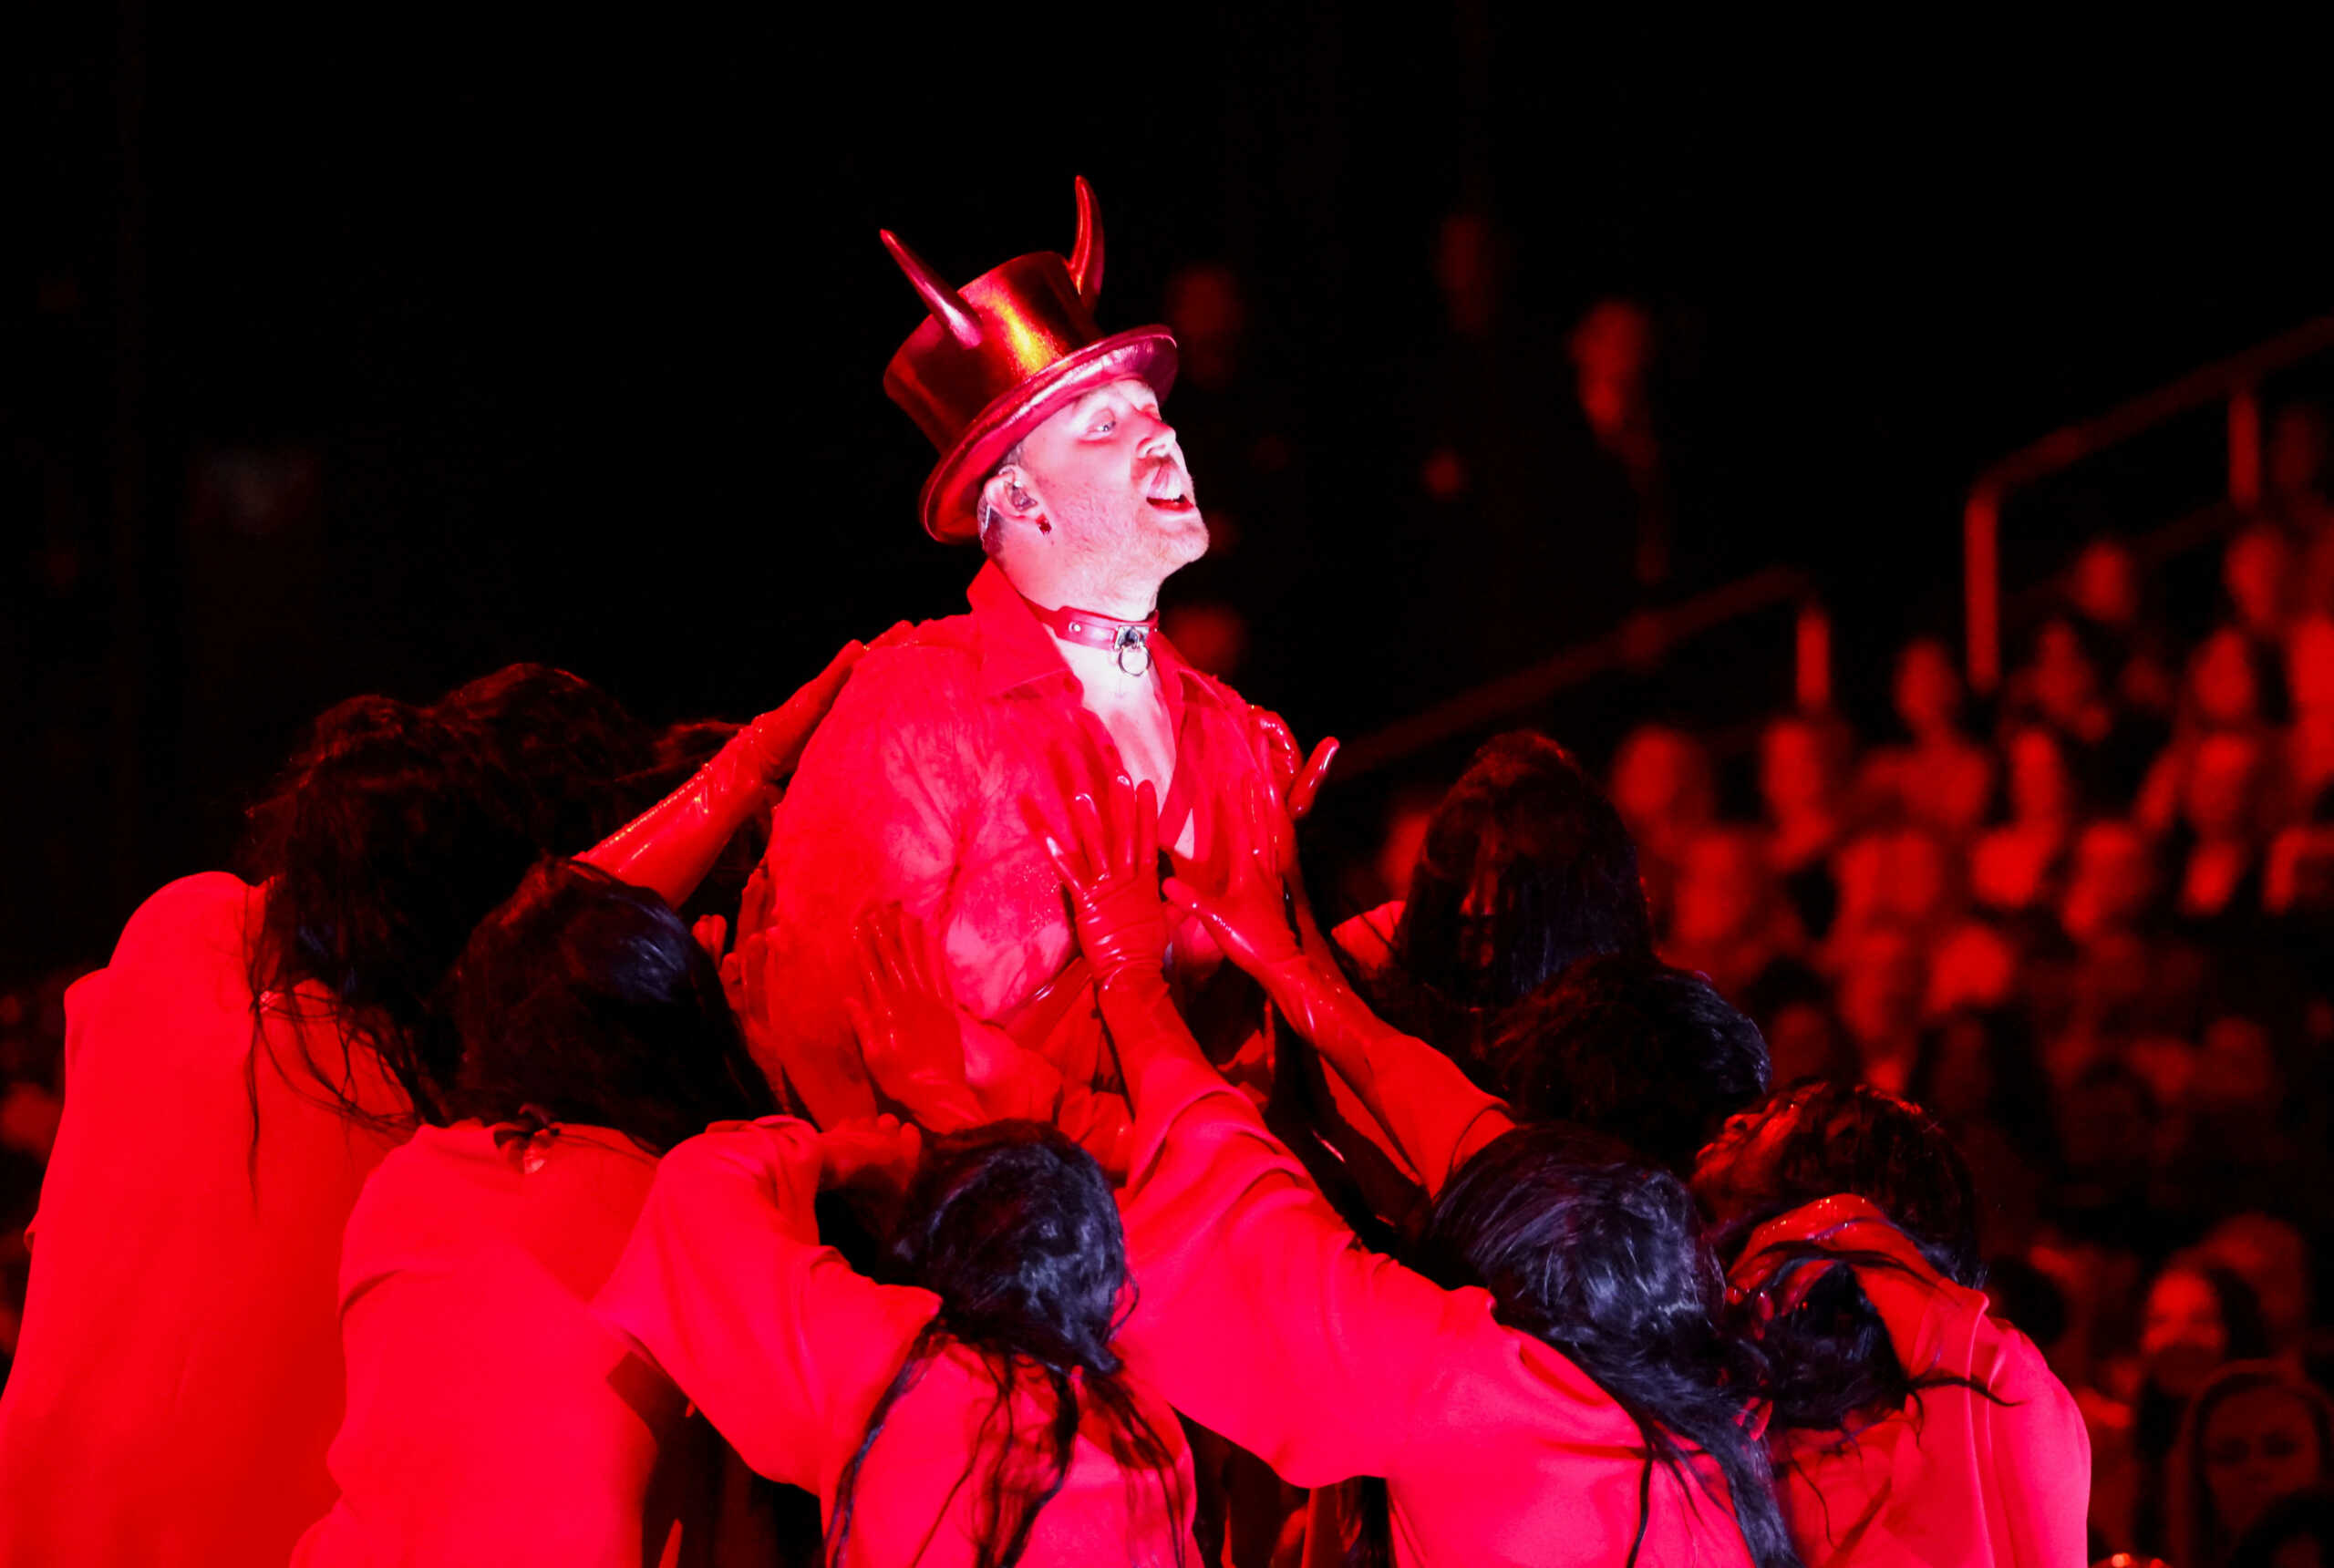 Οργή για την ερμηνεία του Unholy στα βραβεία Grammy – «Έδειχνε εικόνες λατρείας του σατανά»